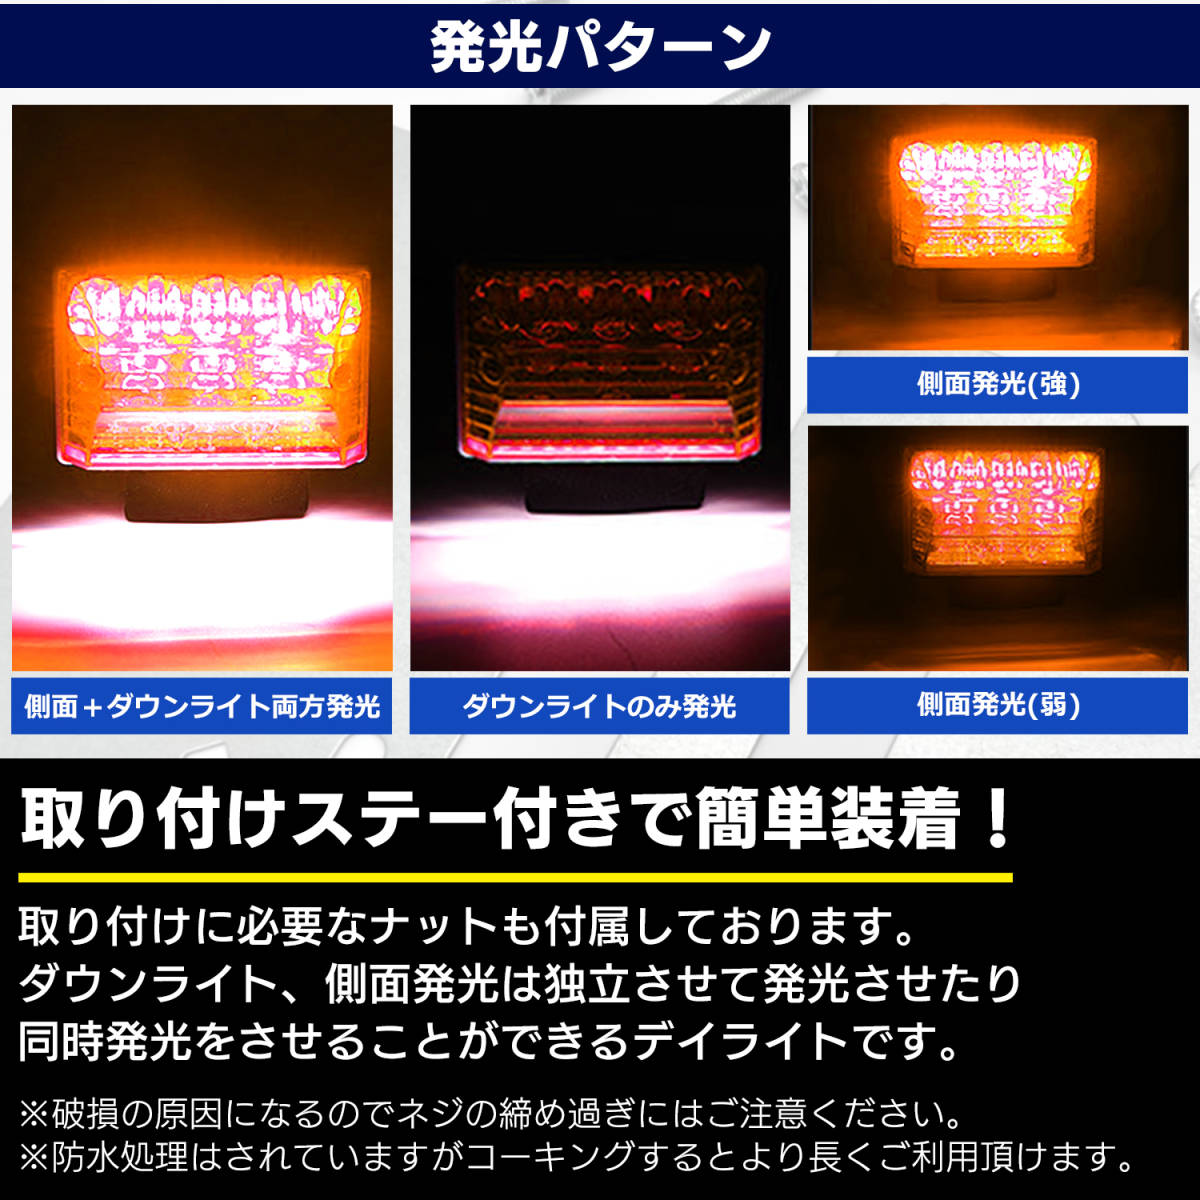 汎用 LED サイド マーカー 24V (オレンジ 10個) トラック デコトラ ダウン ライト ランプ 路肩灯 アンダー ドレスアップ カスタム 角型_画像3